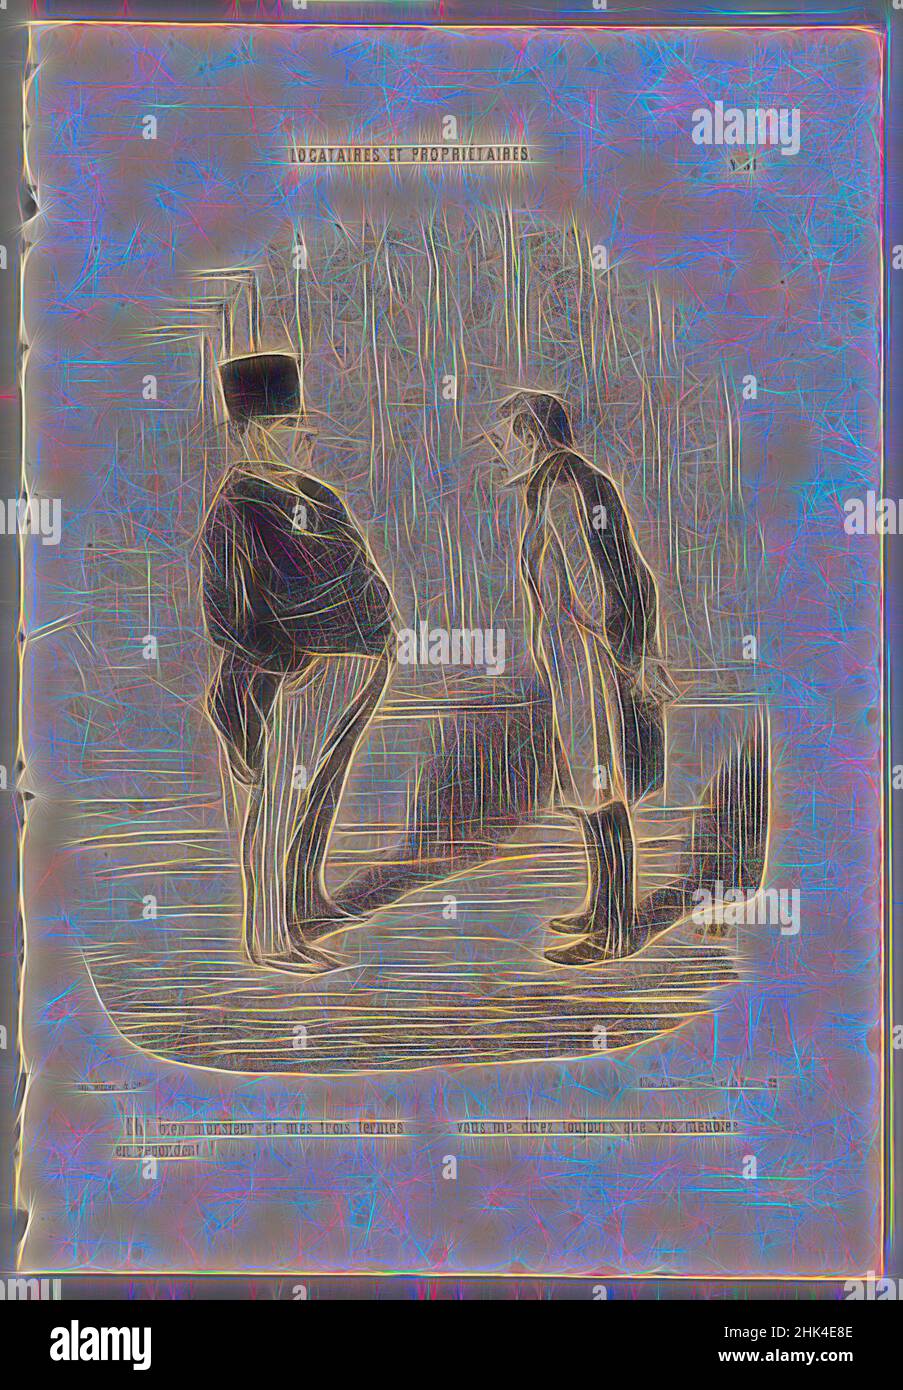 Ispirato da EH! Bien monsieur et mes trois termes...', Honoré Daumier, francese, 1808-1879, litografia su carta da giornale, Giugno 4, 1848, 14 1/8 x 9 3/4 pollici, 35,9 x 24,8 cm, reinventato da Artotop. L'arte classica reinventata con un tocco moderno. Design di calda e allegra luminosità e di raggi di luce. La fotografia si ispira al surrealismo e al futurismo, abbracciando l'energia dinamica della tecnologia moderna, del movimento, della velocità e rivoluzionando la cultura Foto Stock